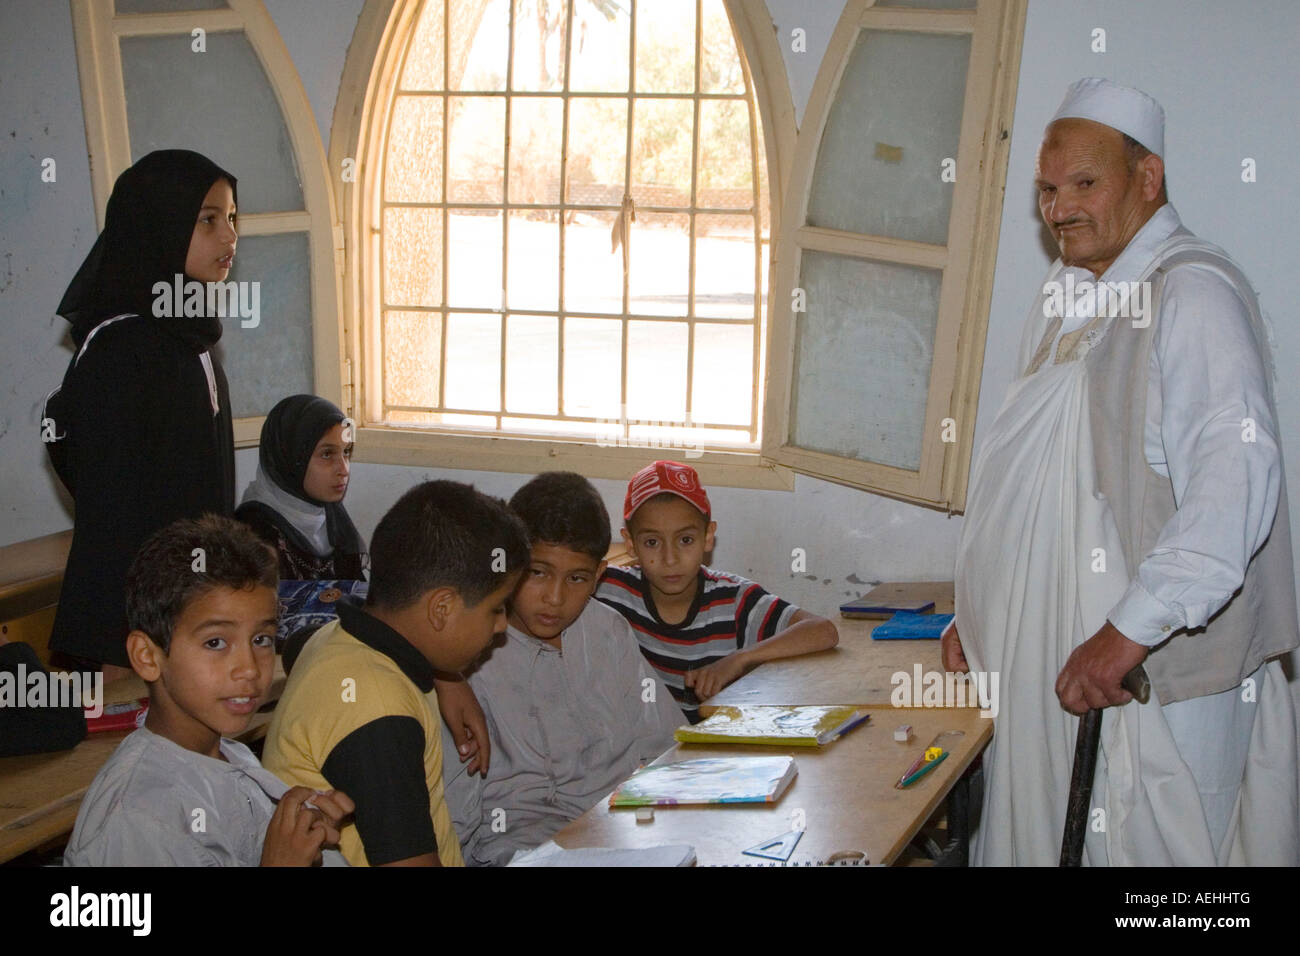 Surman, Libya, near Tripoli. Boys and Girls Memorizing the Koran in the Madrasa of Sidi Rashid al Galili. Stock Photo